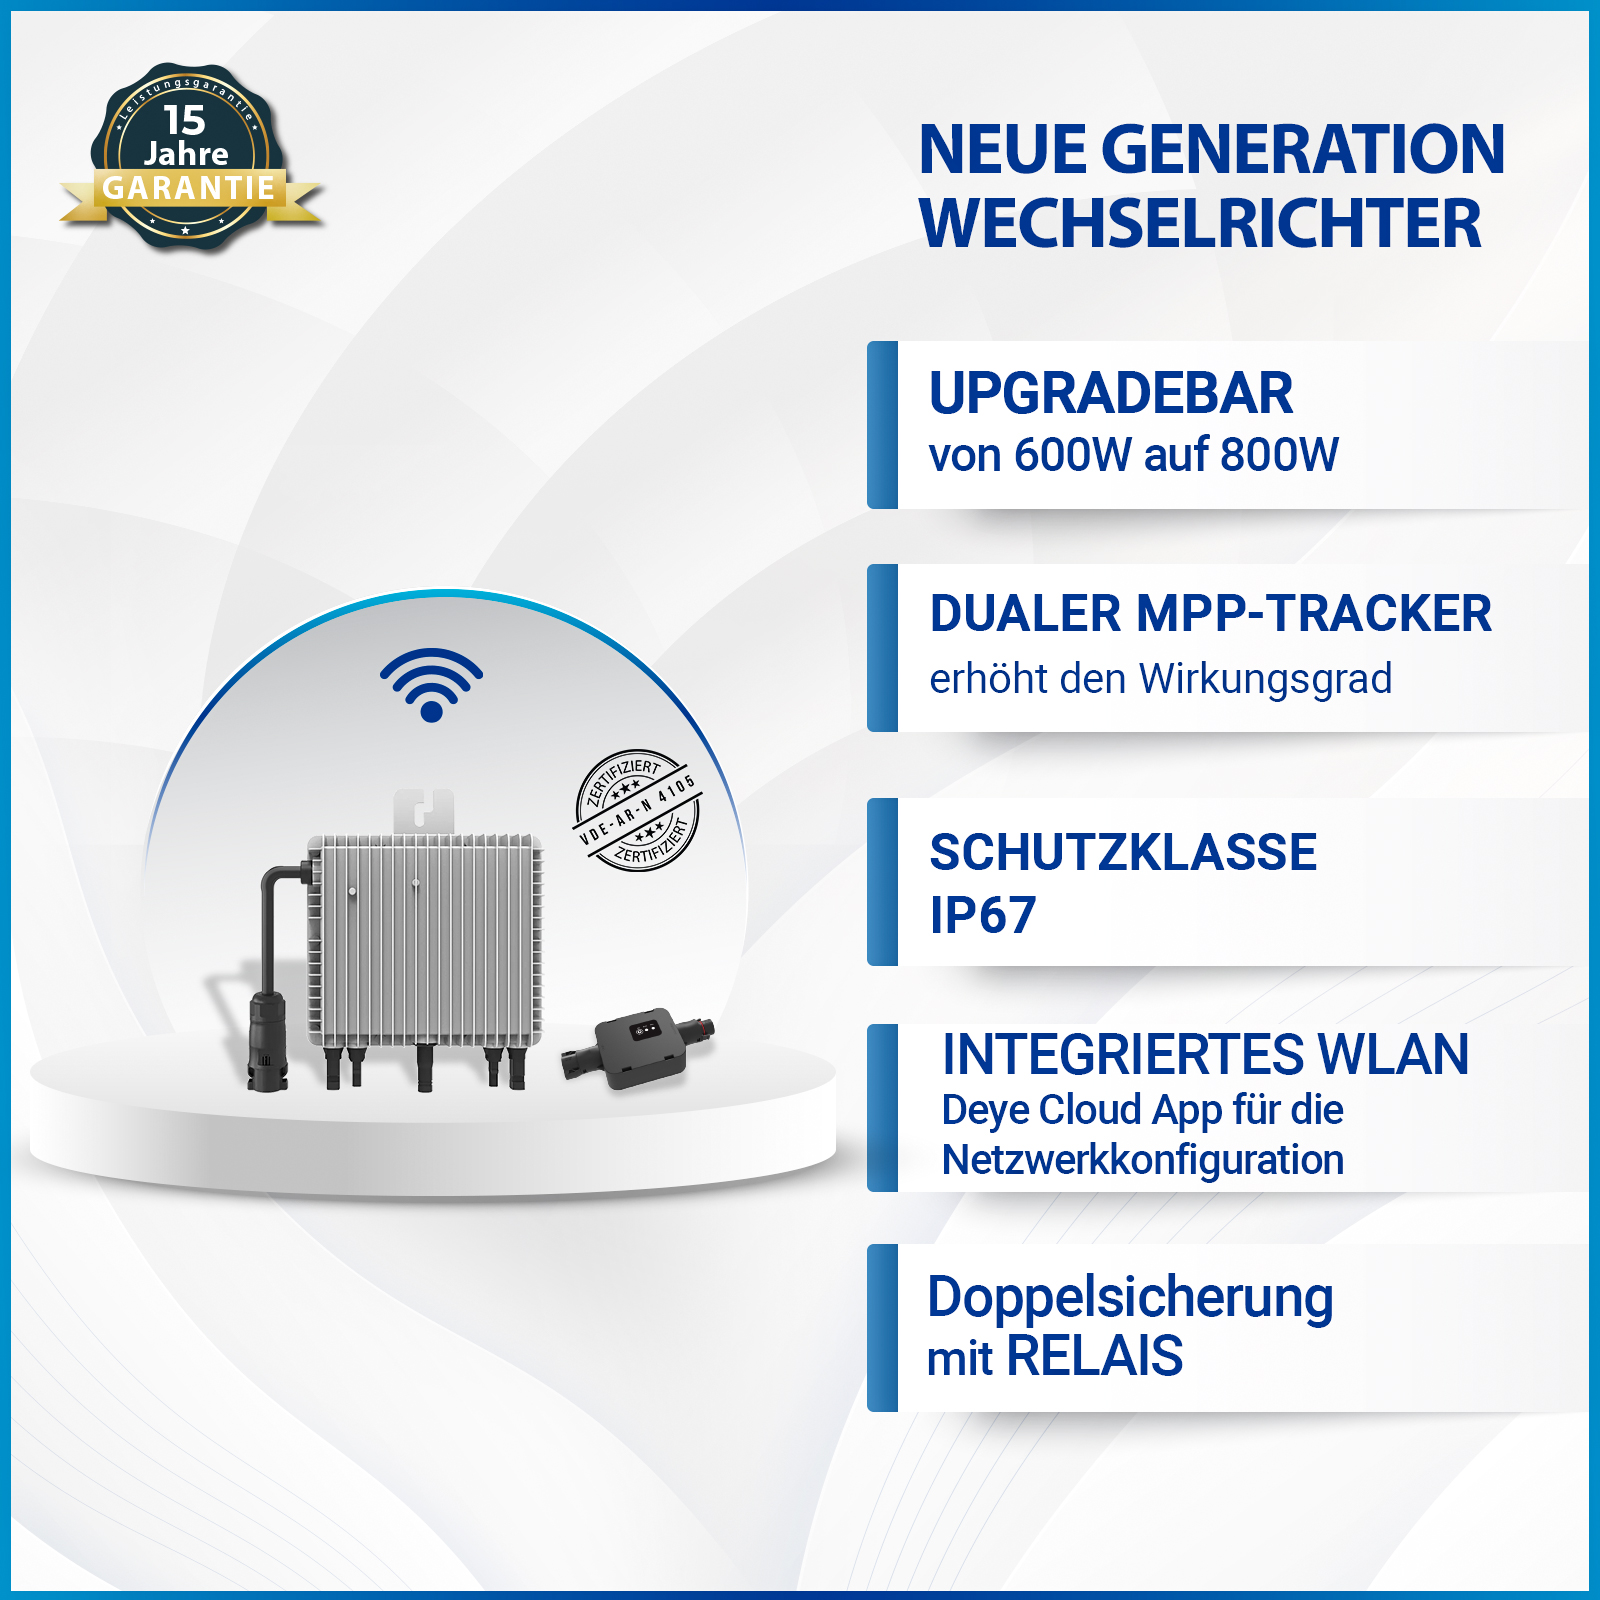 800W Deye (SUN-M80G3-EU-Q0) Neu Generation Upgradefähiger WIFI  Wechselrichter mit Relais - SOLAR-HOOK etm GmbH